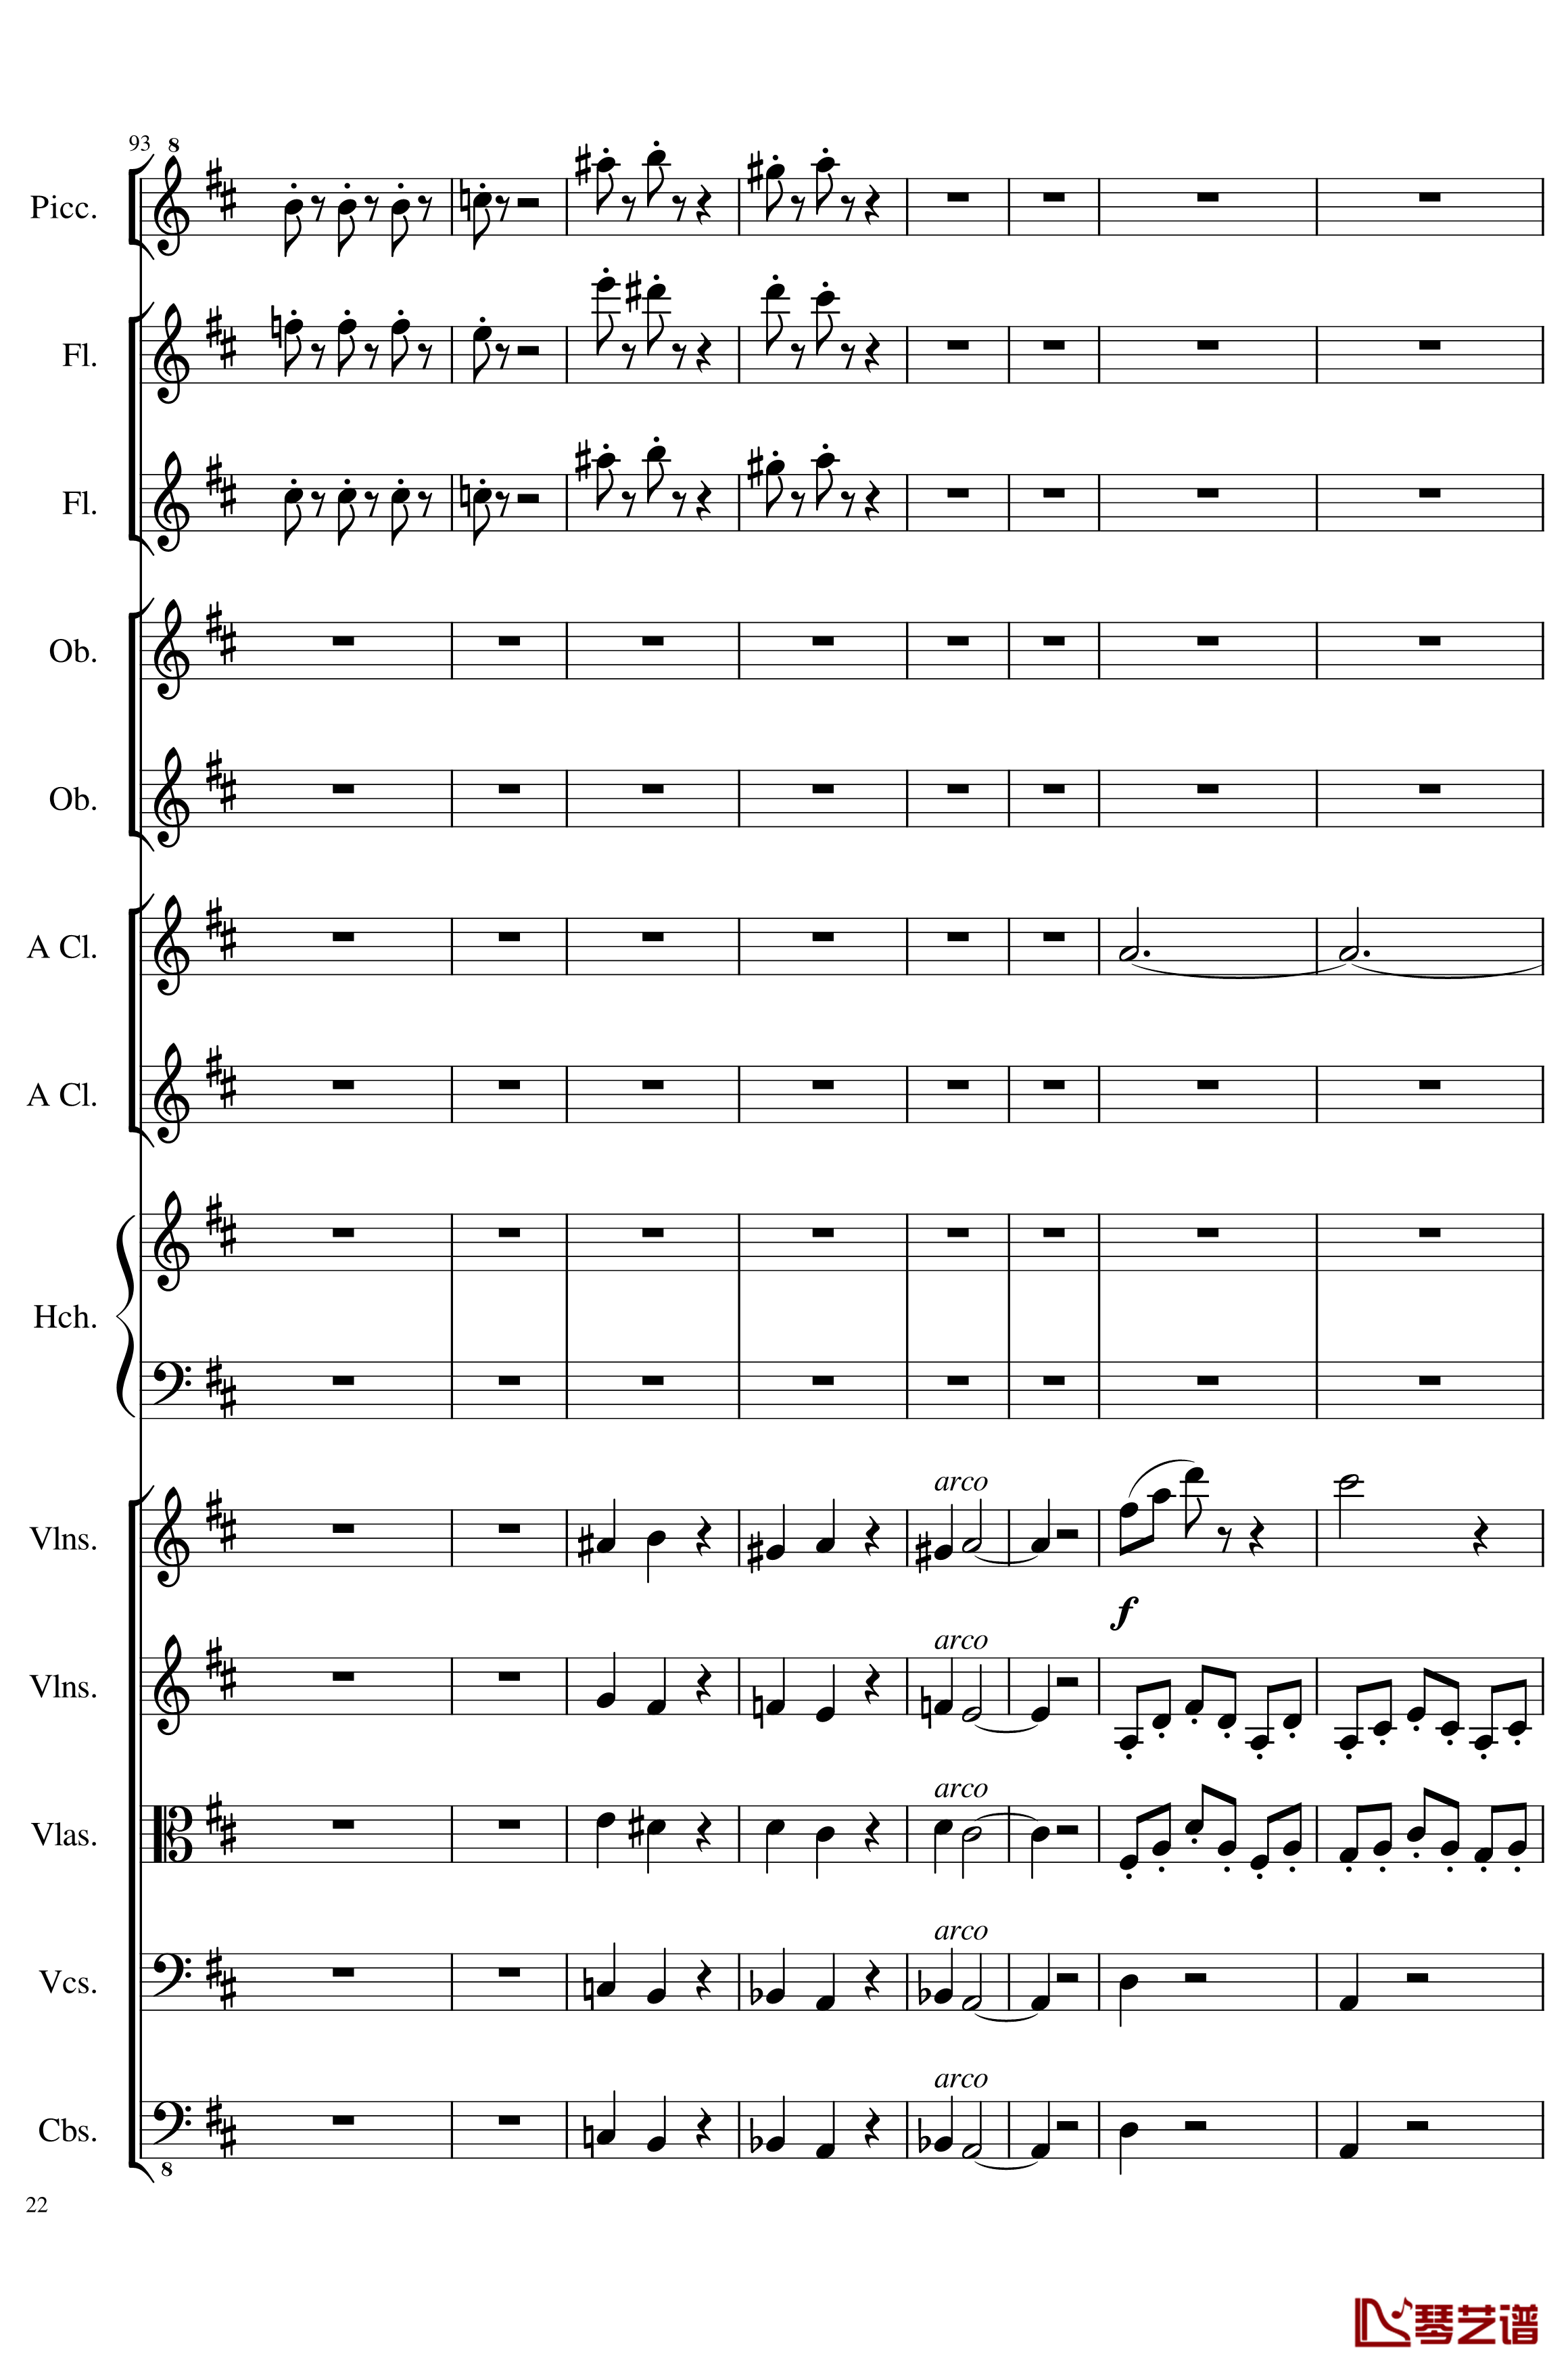 7 Contredanses No.1-7, Op.124钢琴谱-7首乡村舞曲，第一至第七，作品124-一个球22